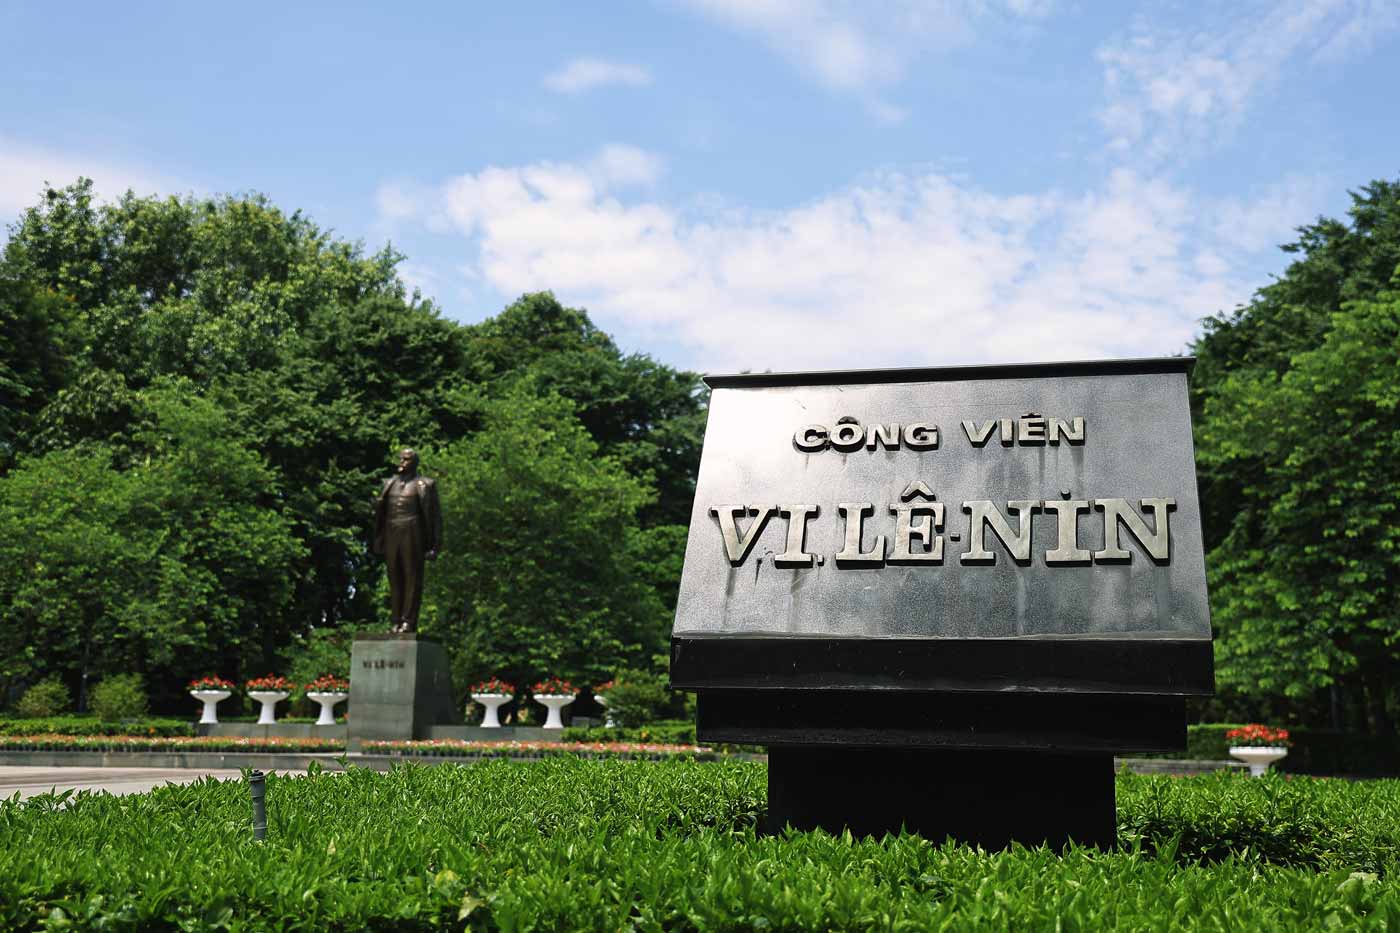 Công viên Lê Nin, là nơi Đảng, Chính phủ và Nhân dân Việt Nam đến V.I.Lênin, nhà tư tưởng vĩ đại, nhà lý luận chính trị kiệt xuất, lãnh tụ lỗi lạc của giai cấp công nhân và nhân dân lao động toàn thế giới; người bảo vệ và phát triển chủ nghĩa Mác, sáng lập Nhà nước công nông đầu tiên trên thế giới, xây dựng chủ nghĩa xã hội hiện thực.